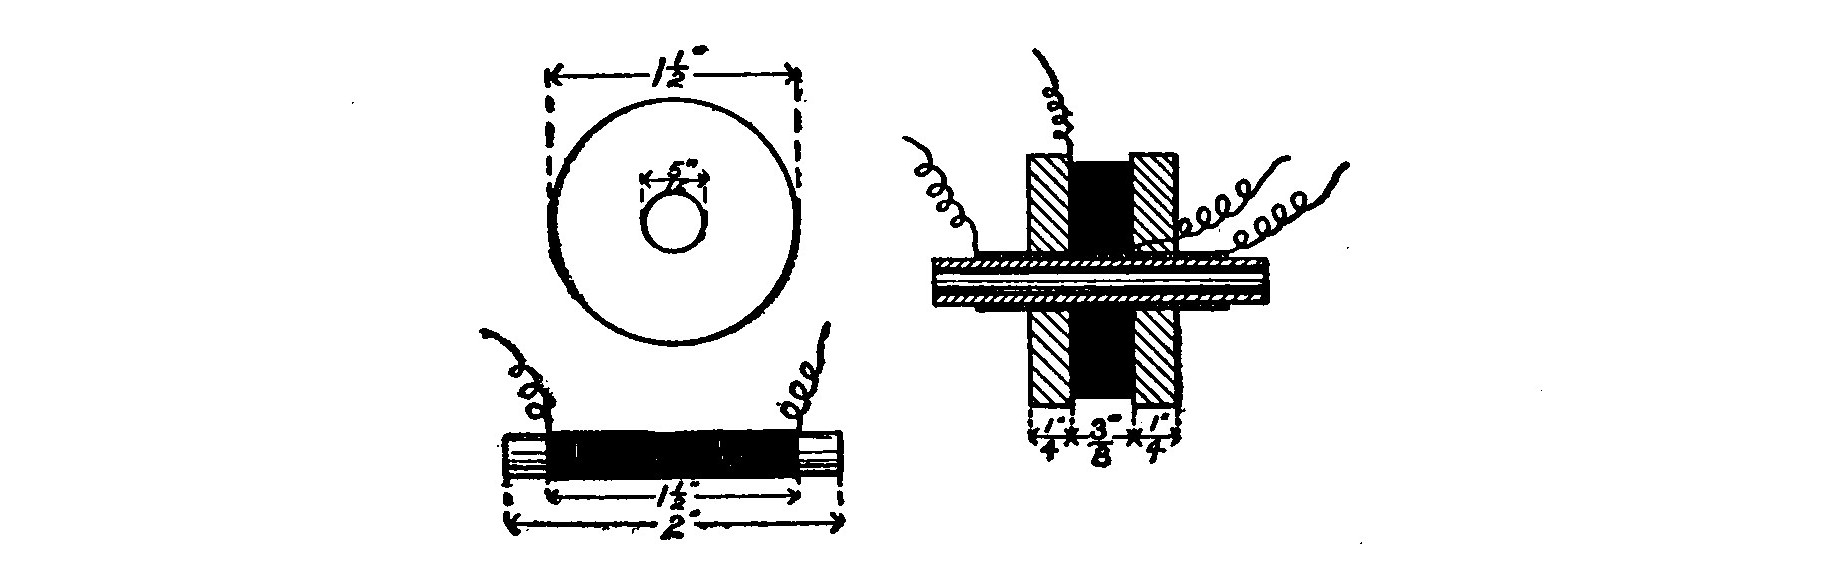 Fig. 113. Details of Transformer.